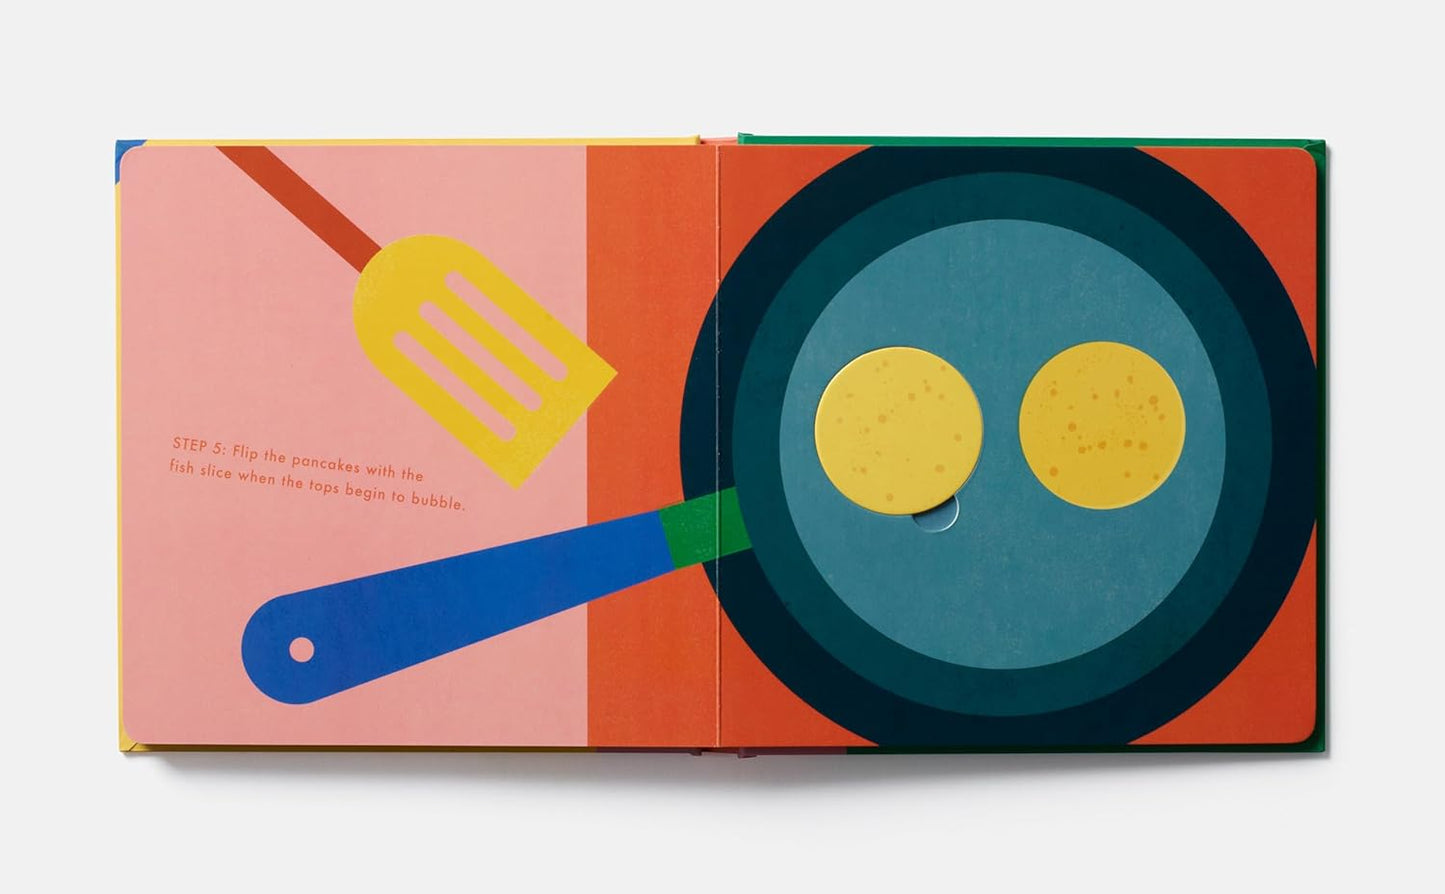 Pancakes!: An Interactive Recipe Book